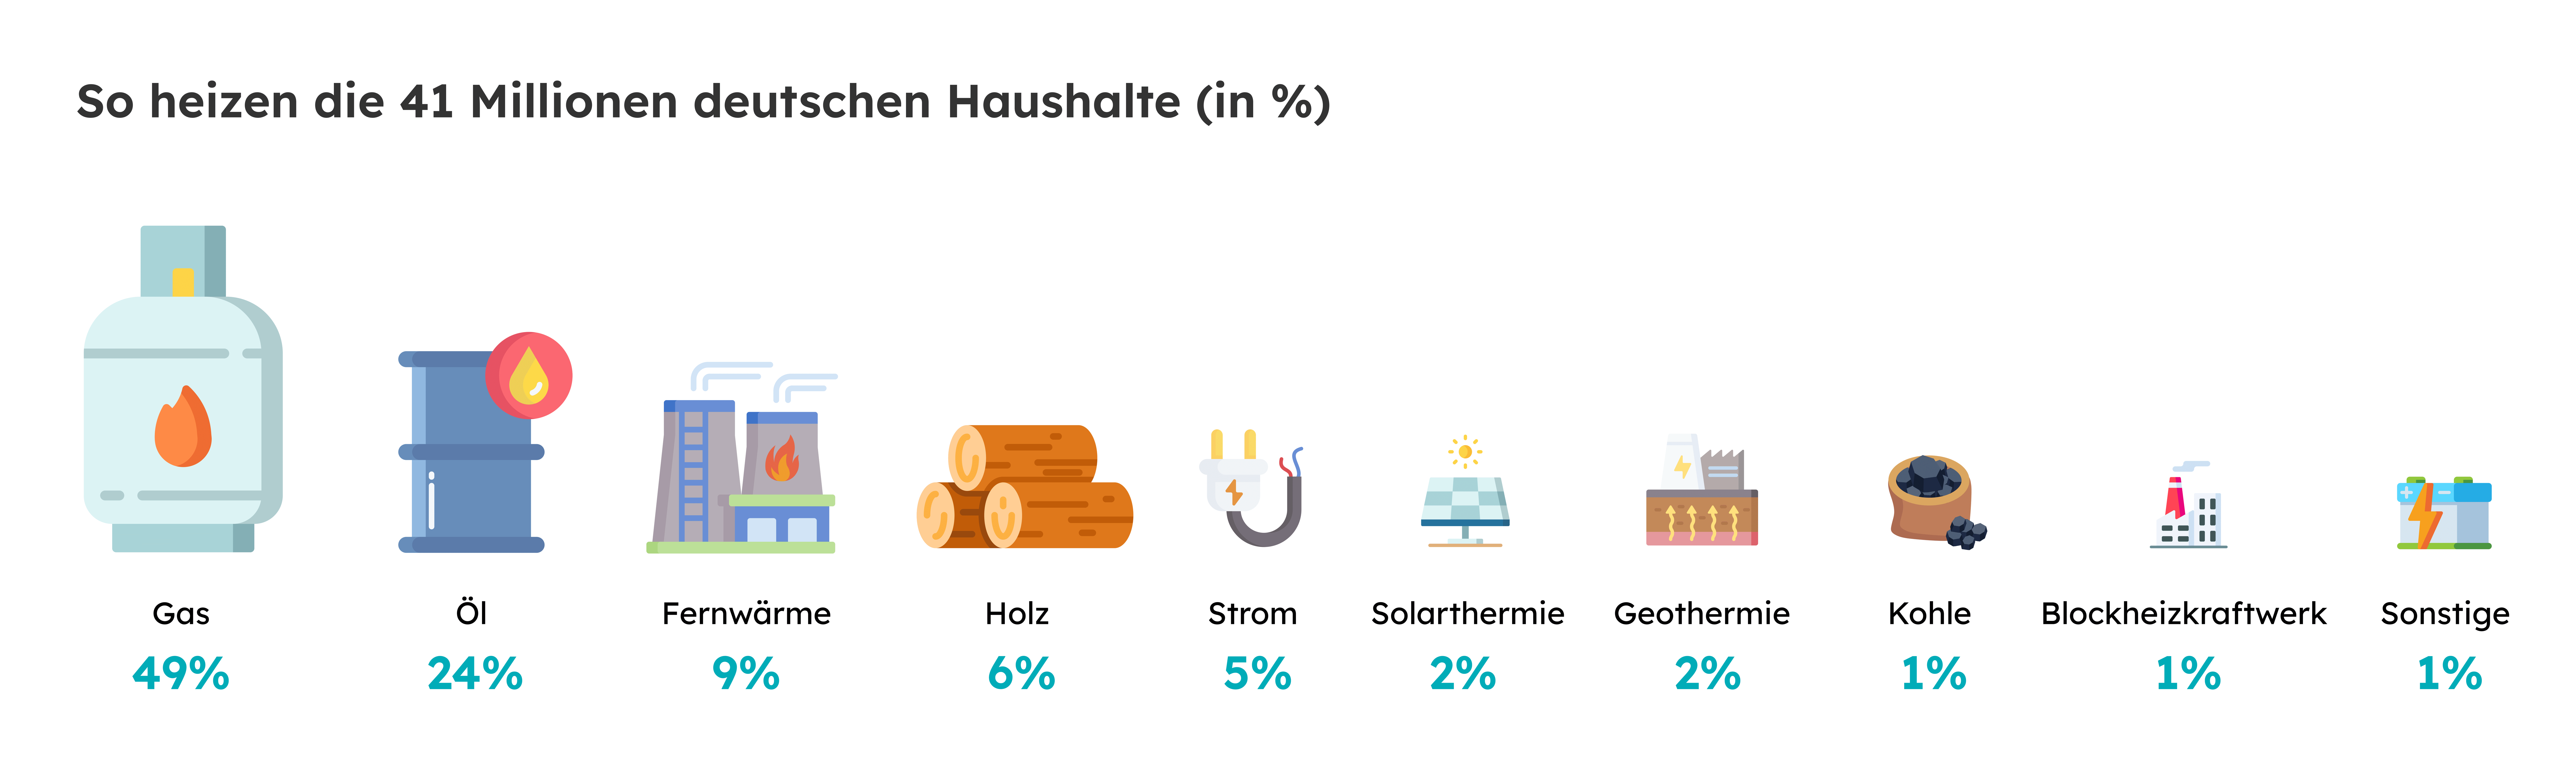 Grafik, wie viel Prozent der deutschen Haushalte mit welchem Heizsystem heizen